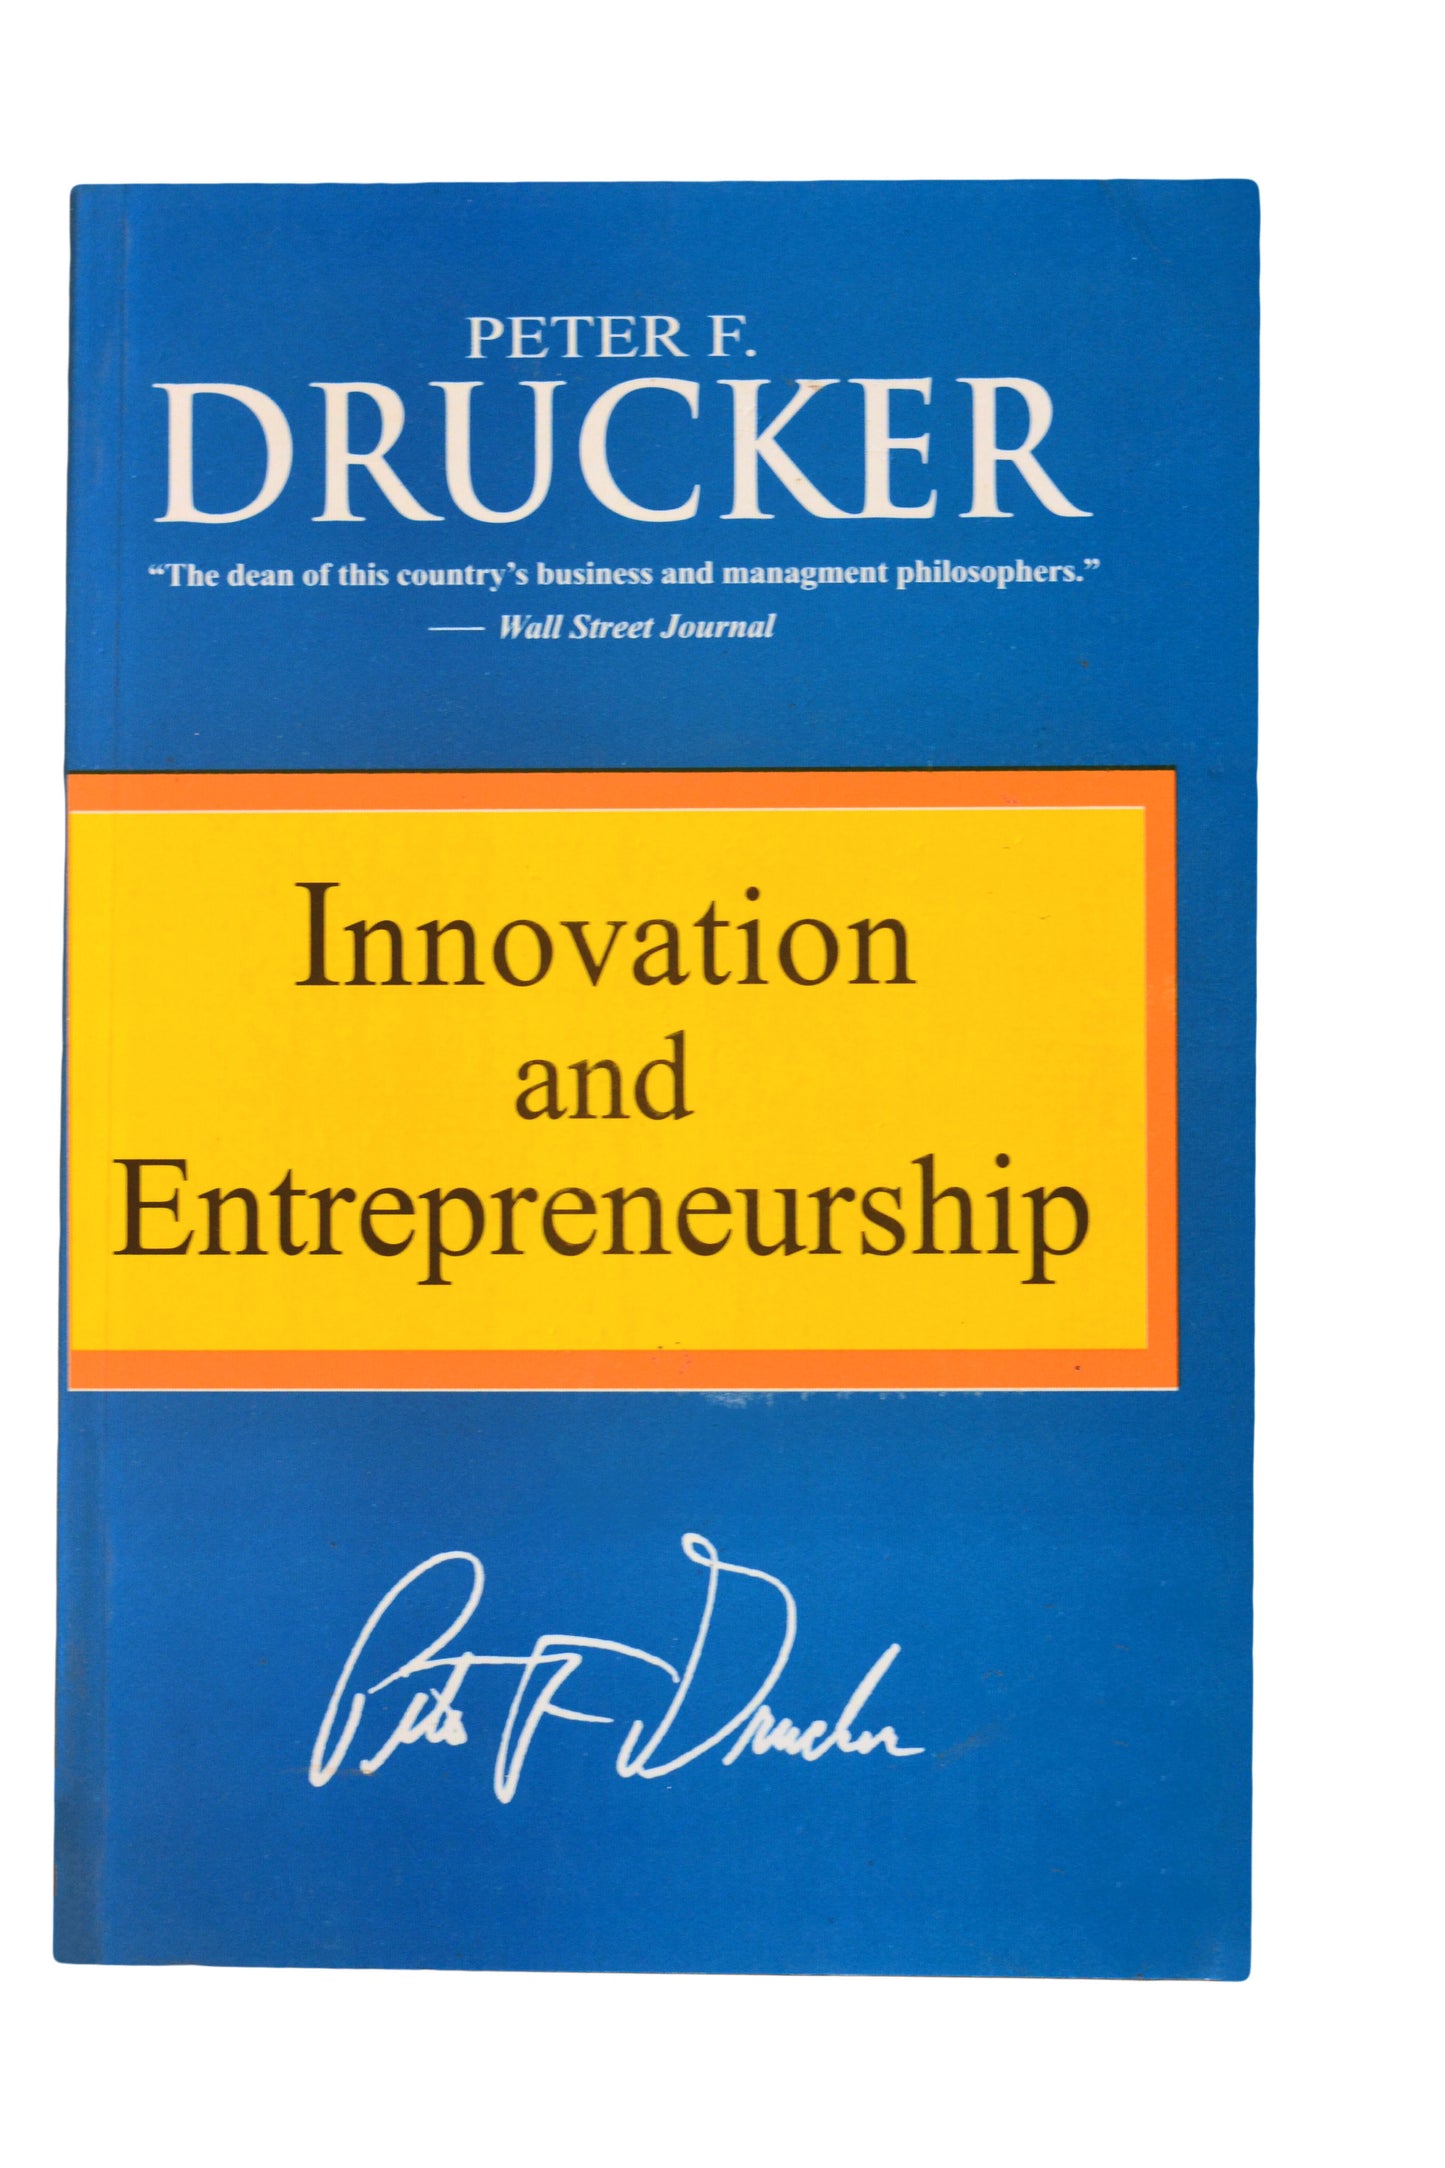 INNOVATION and ENTREPRENEURSHIP by Peter Drucker